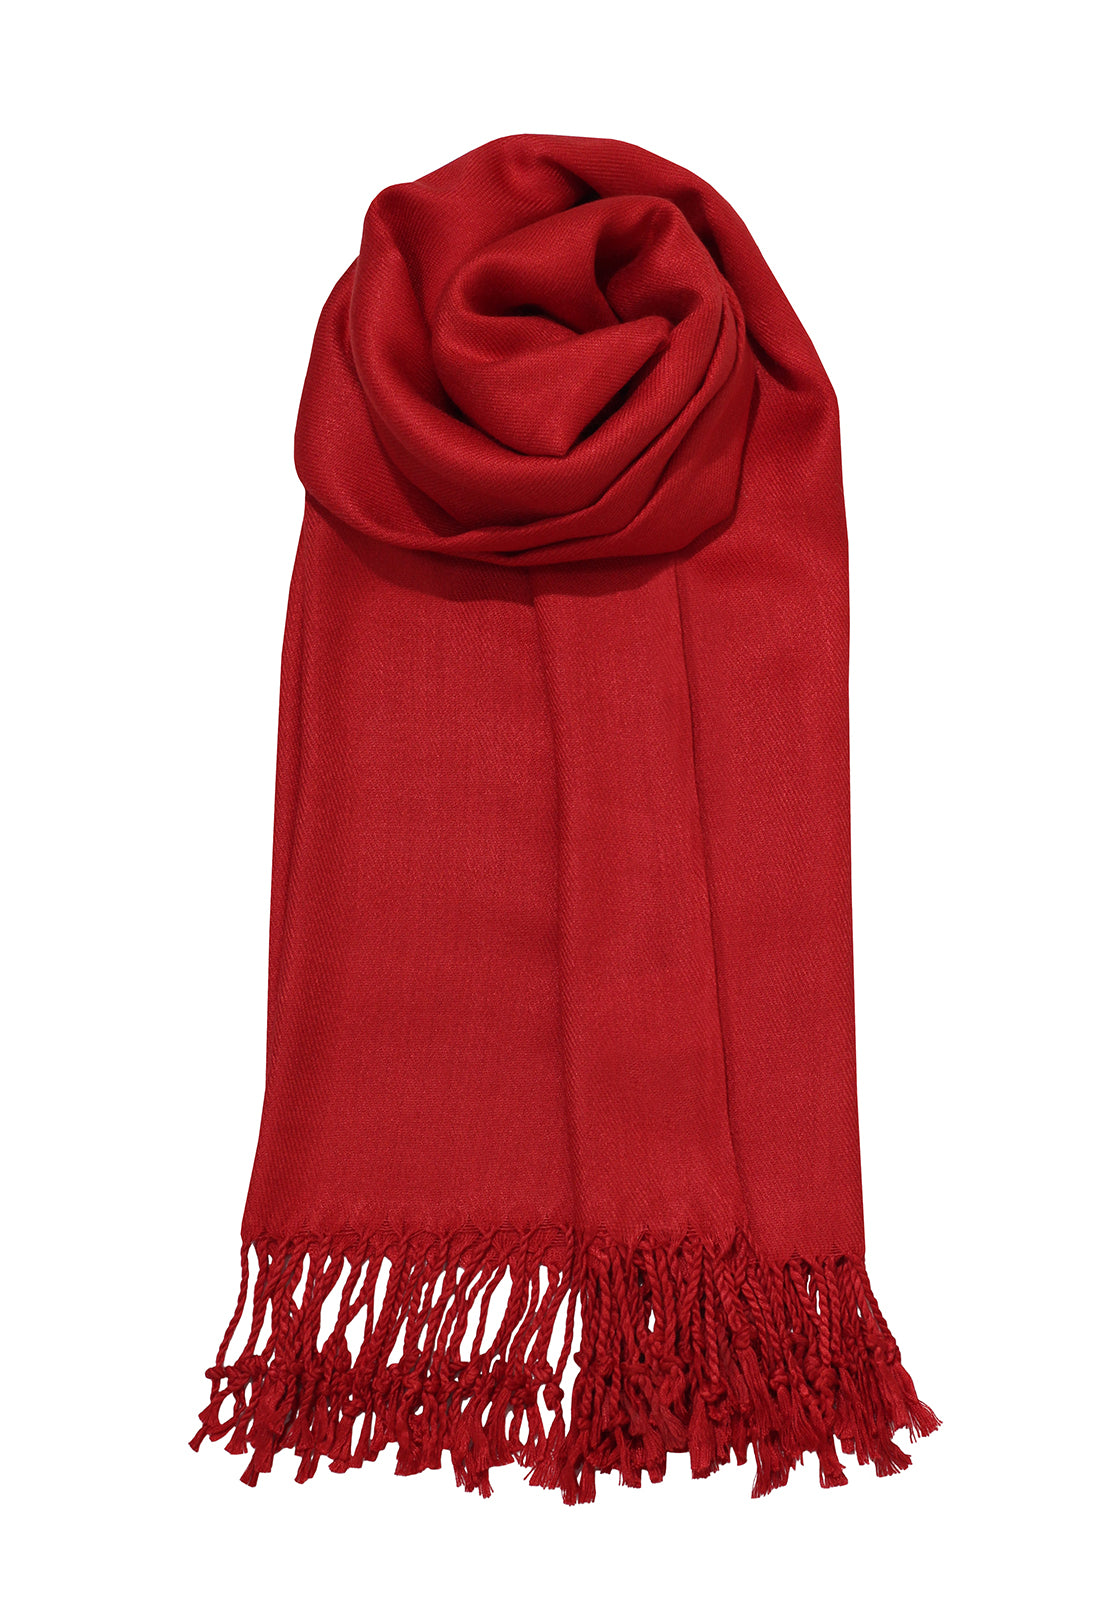 cachecol de viscose vermelho cereja 70x180cm para festas, eventos, inverno e frio